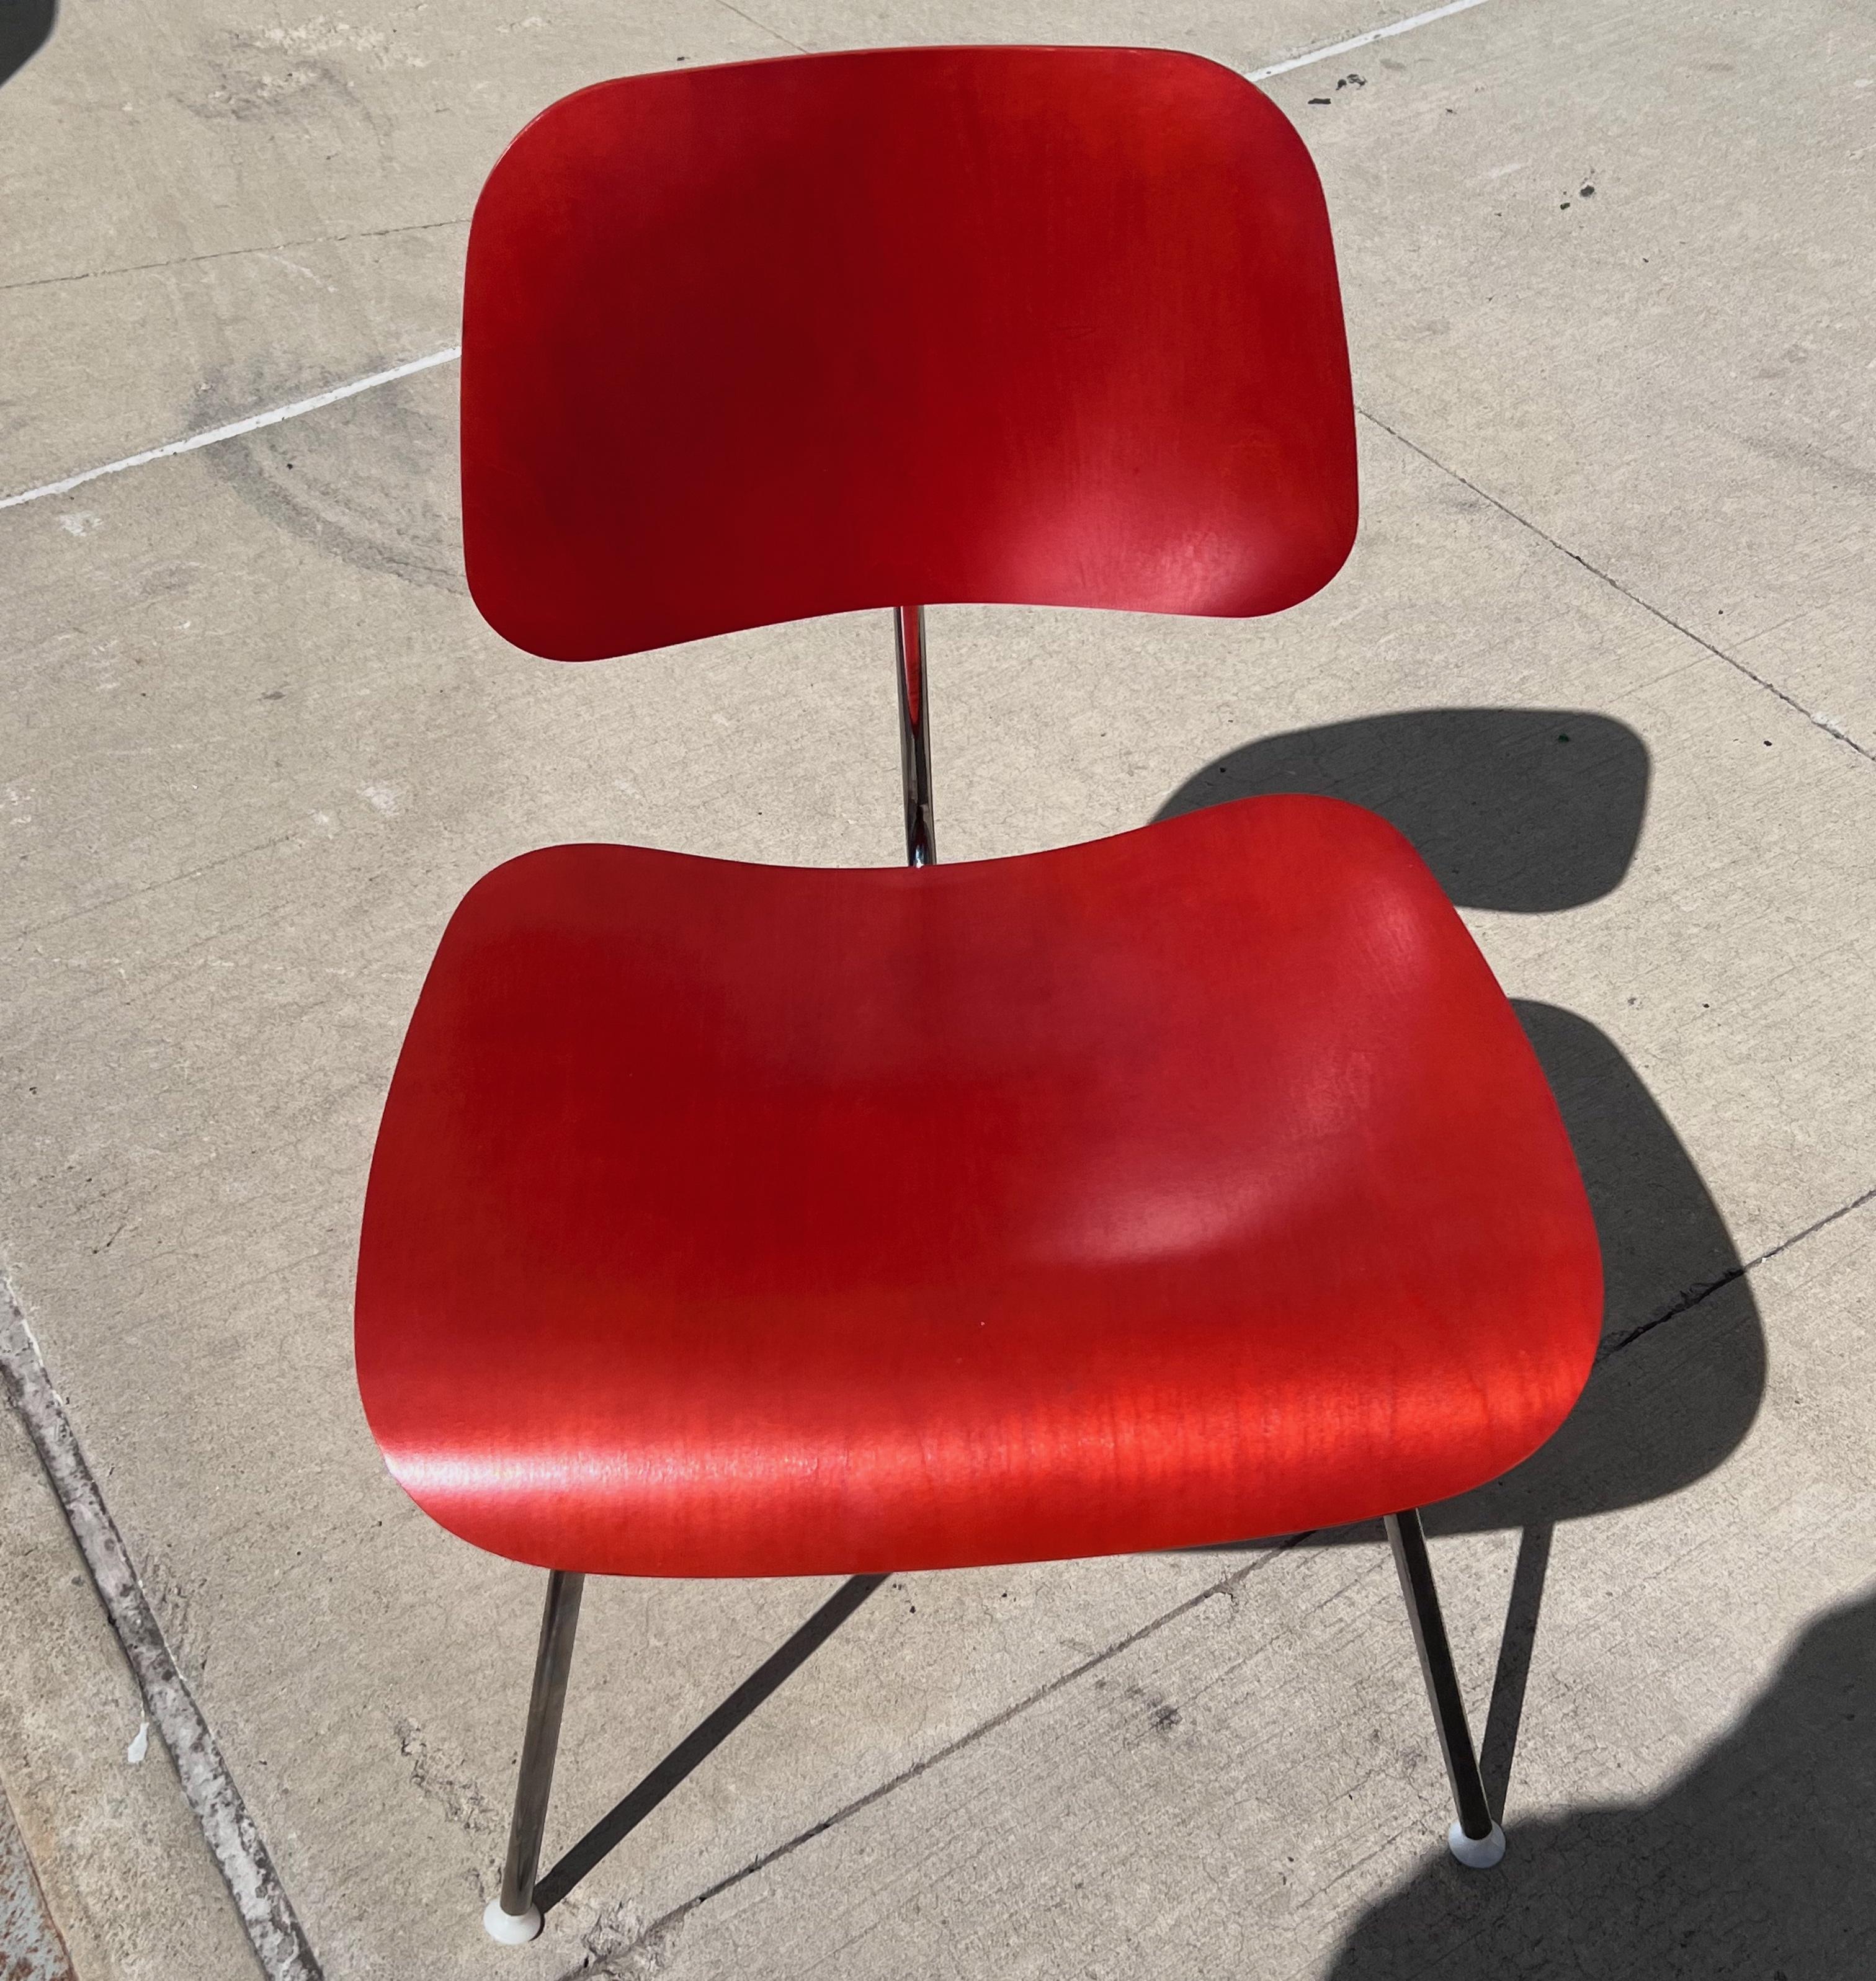 Charles und Ray Eames DCM-Stuhl aus Rotbuche, Herman Miller, Esszimmerstuhl, Beistellstuhl. Etikettiert. Entworfen im Jahr 1946. Produziert im Jahr 2017.

Ein authentischer Eames-Stuhl für alle Fälle - eine schöne Ergänzung für jeden Esszimmertisch